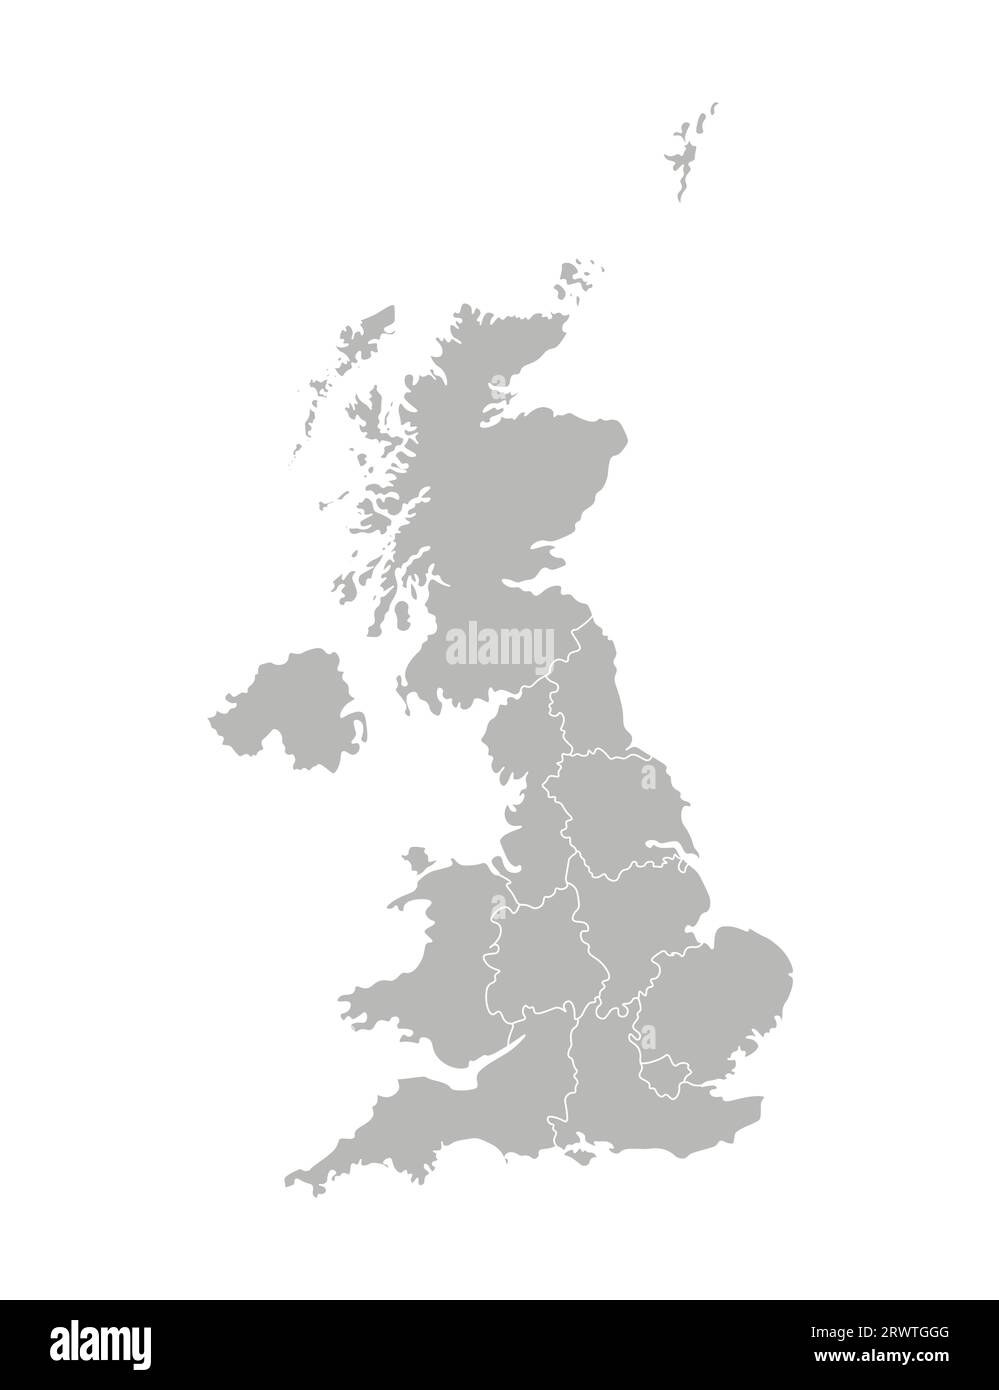 Vektor-isolierte Illustration einer vereinfachten Verwaltungskarte des Vereinigten Königreichs Großbritannien und Nordirland. Grenzen der Provinzen Re Stock Vektor